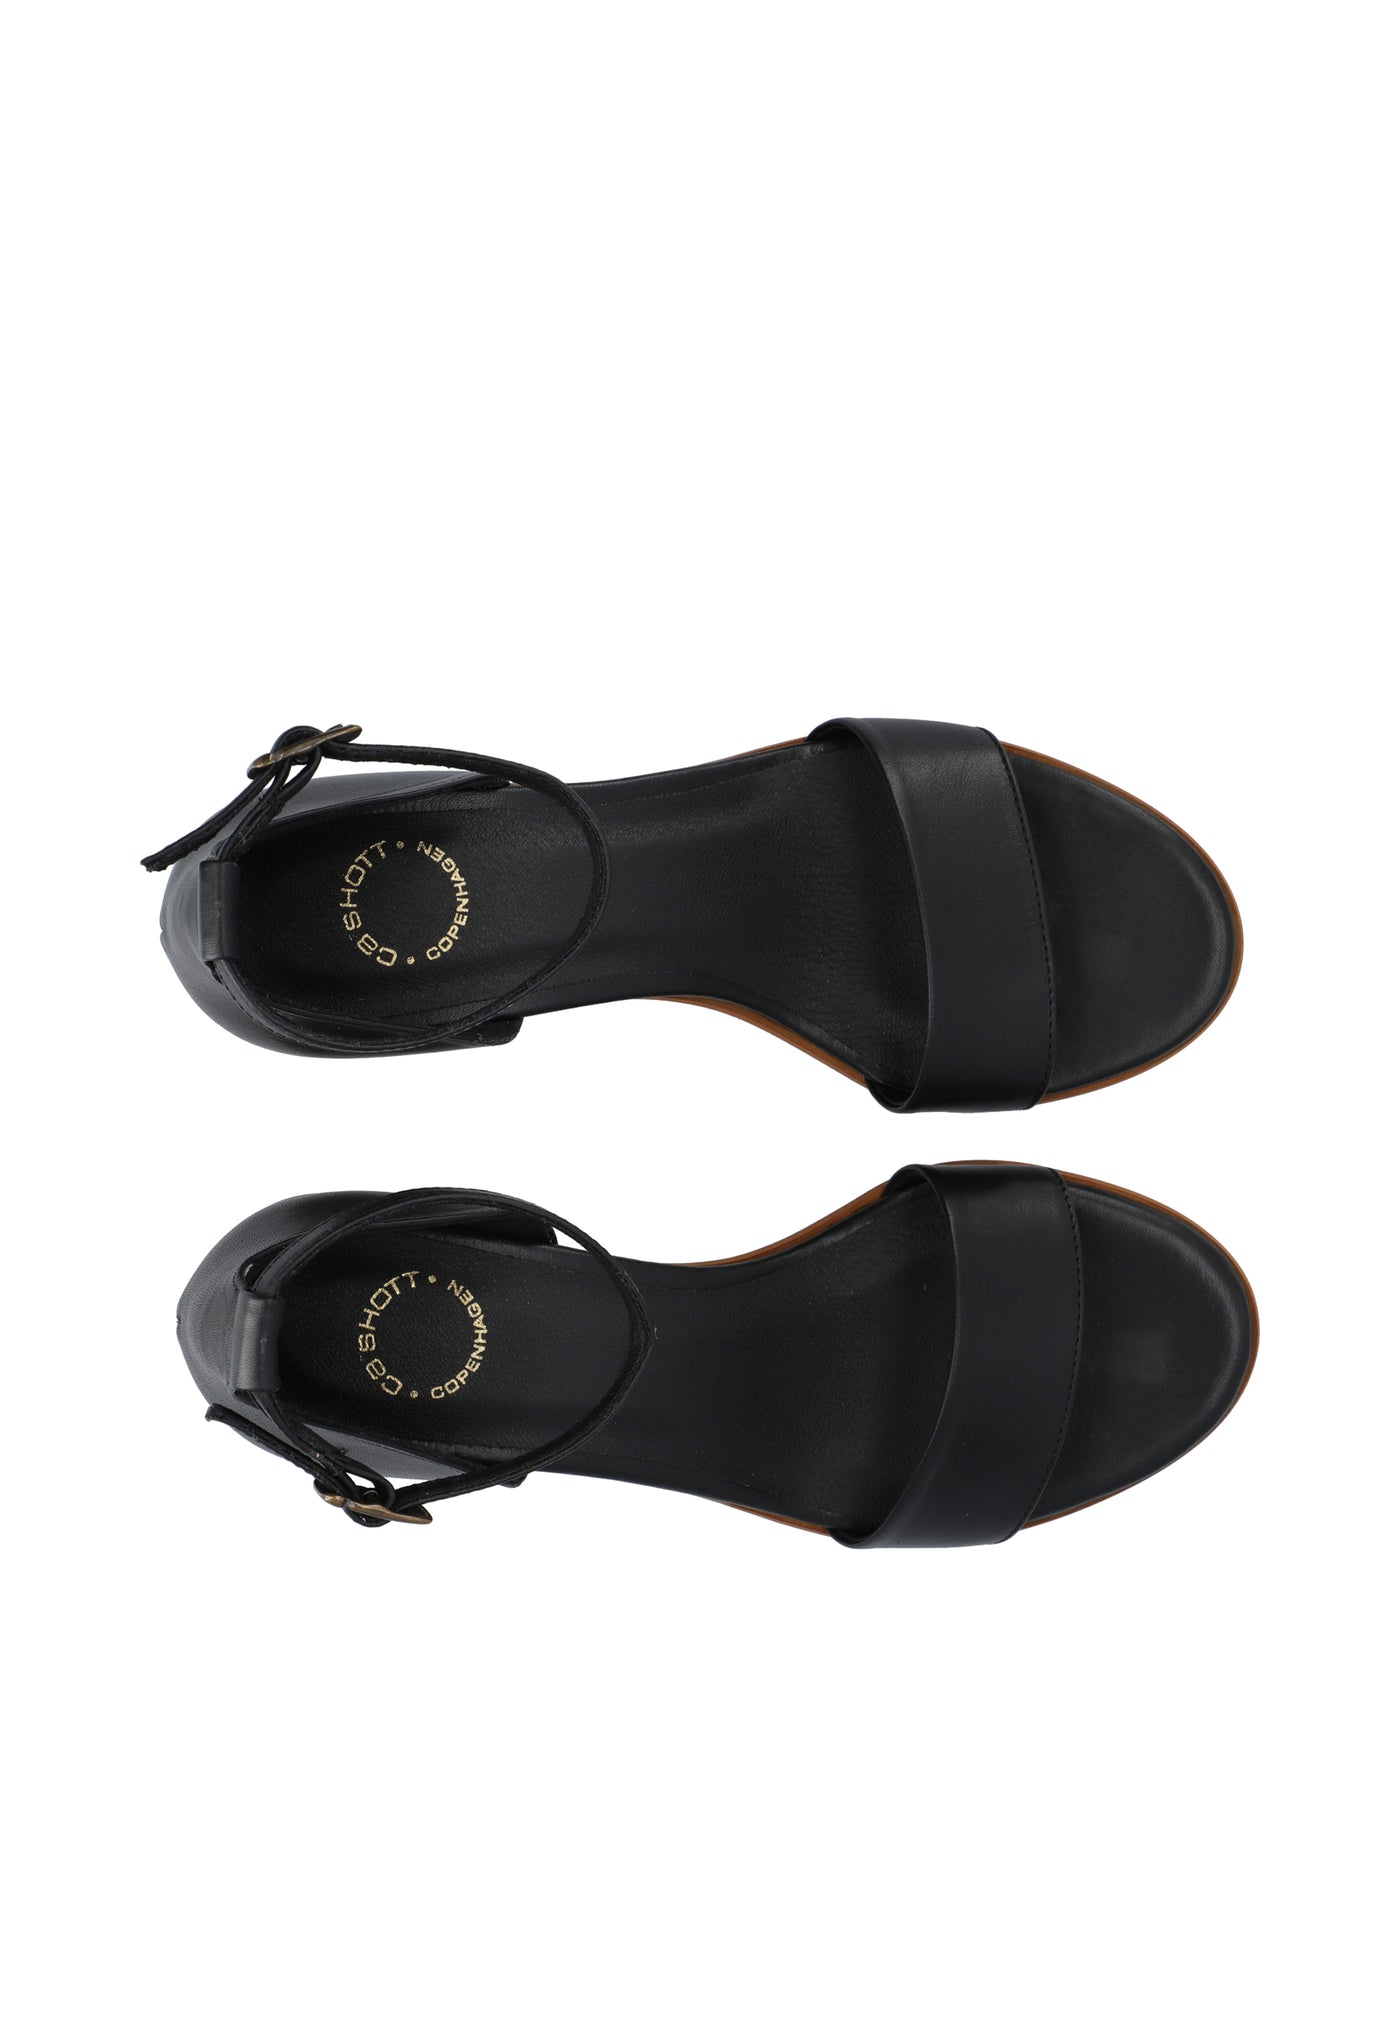 CASHOTT CASSTINA Sandal Ankle Strap Leather Ankel strap Black